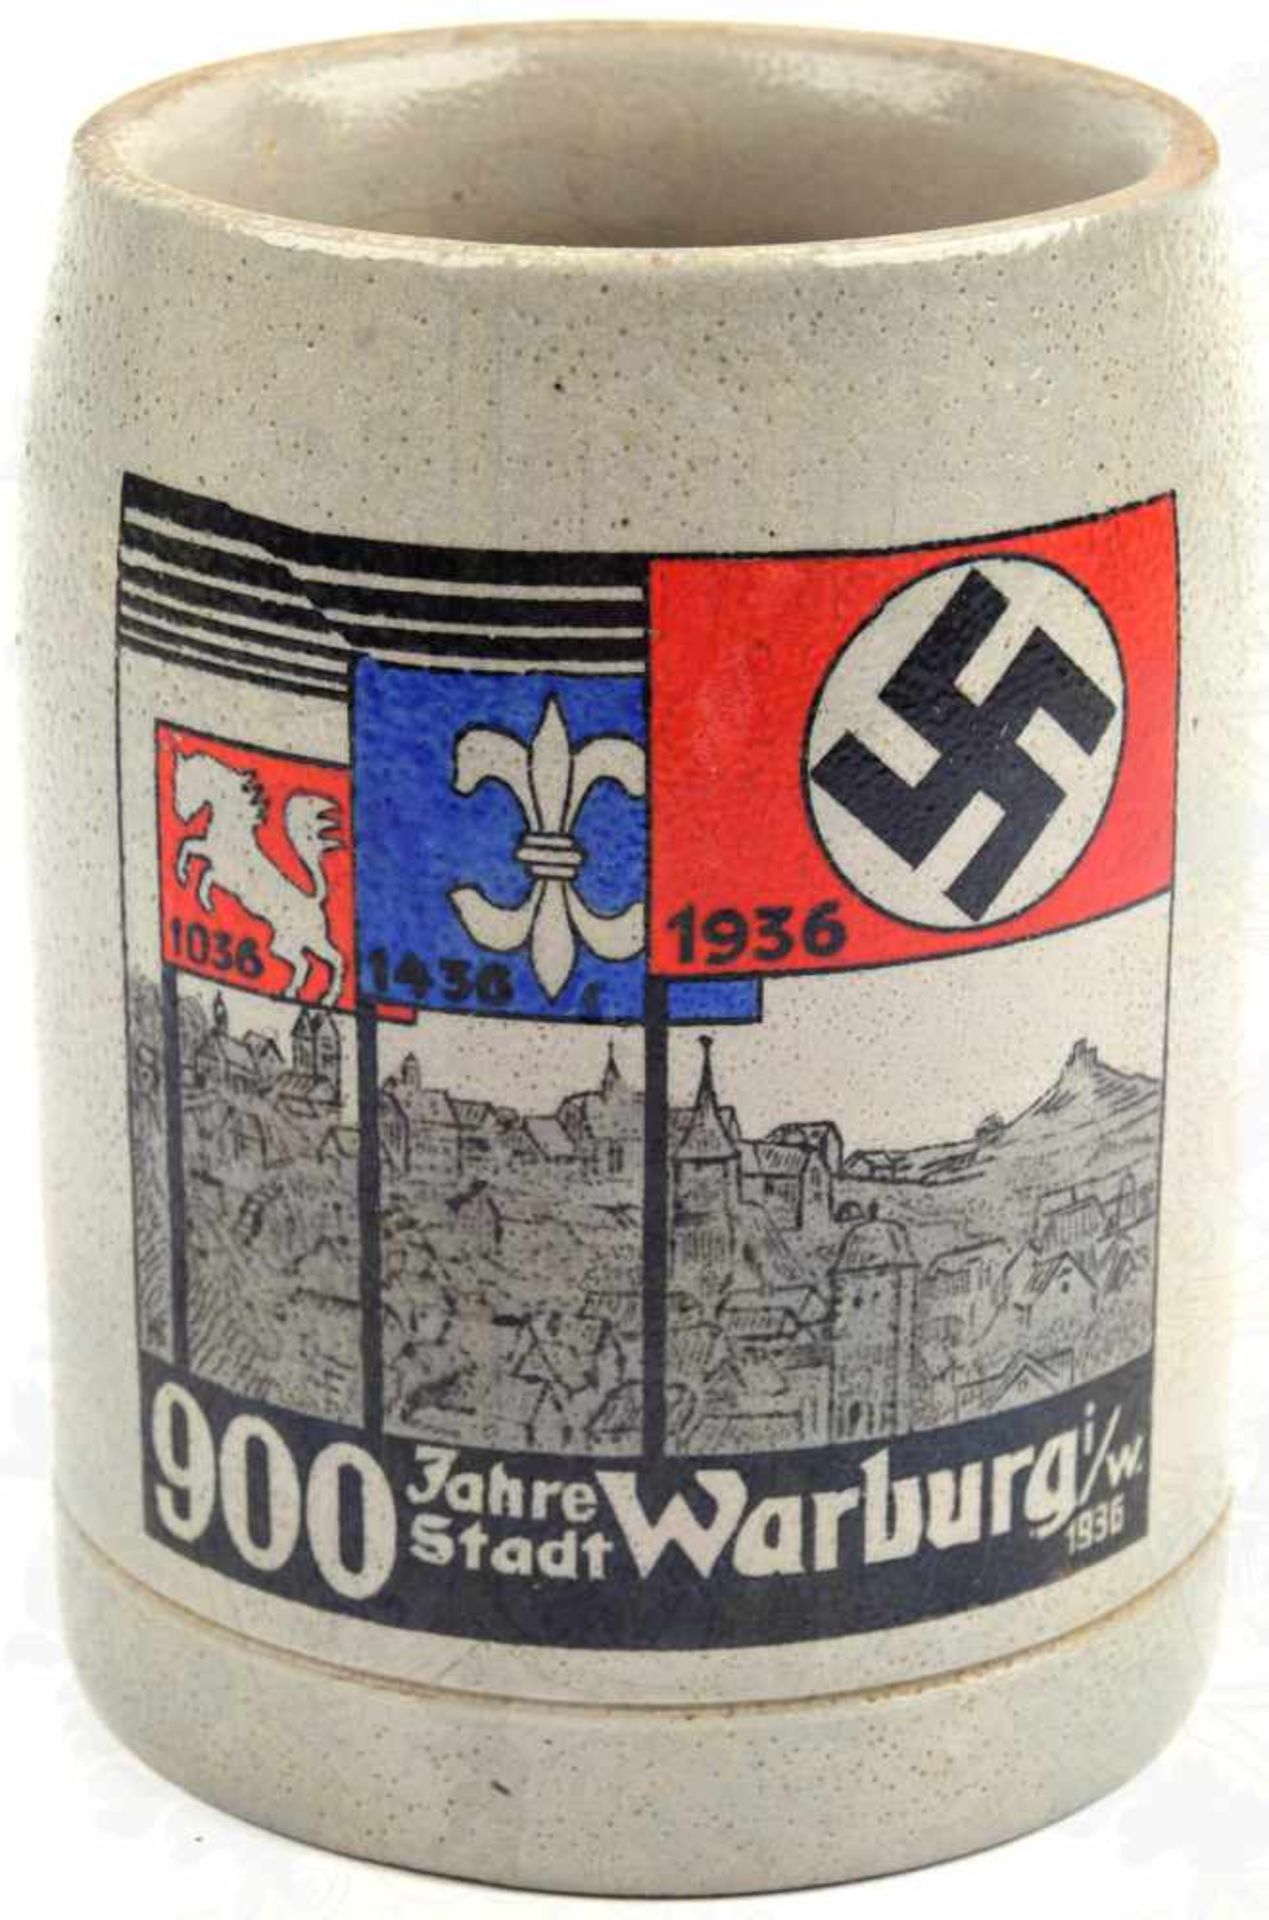 BIERKRUG „900 JAHRE STADT WARBURG IN WESTFALEN“, 0,5 L., 1936, graues Steinzeug, aufgedruckte